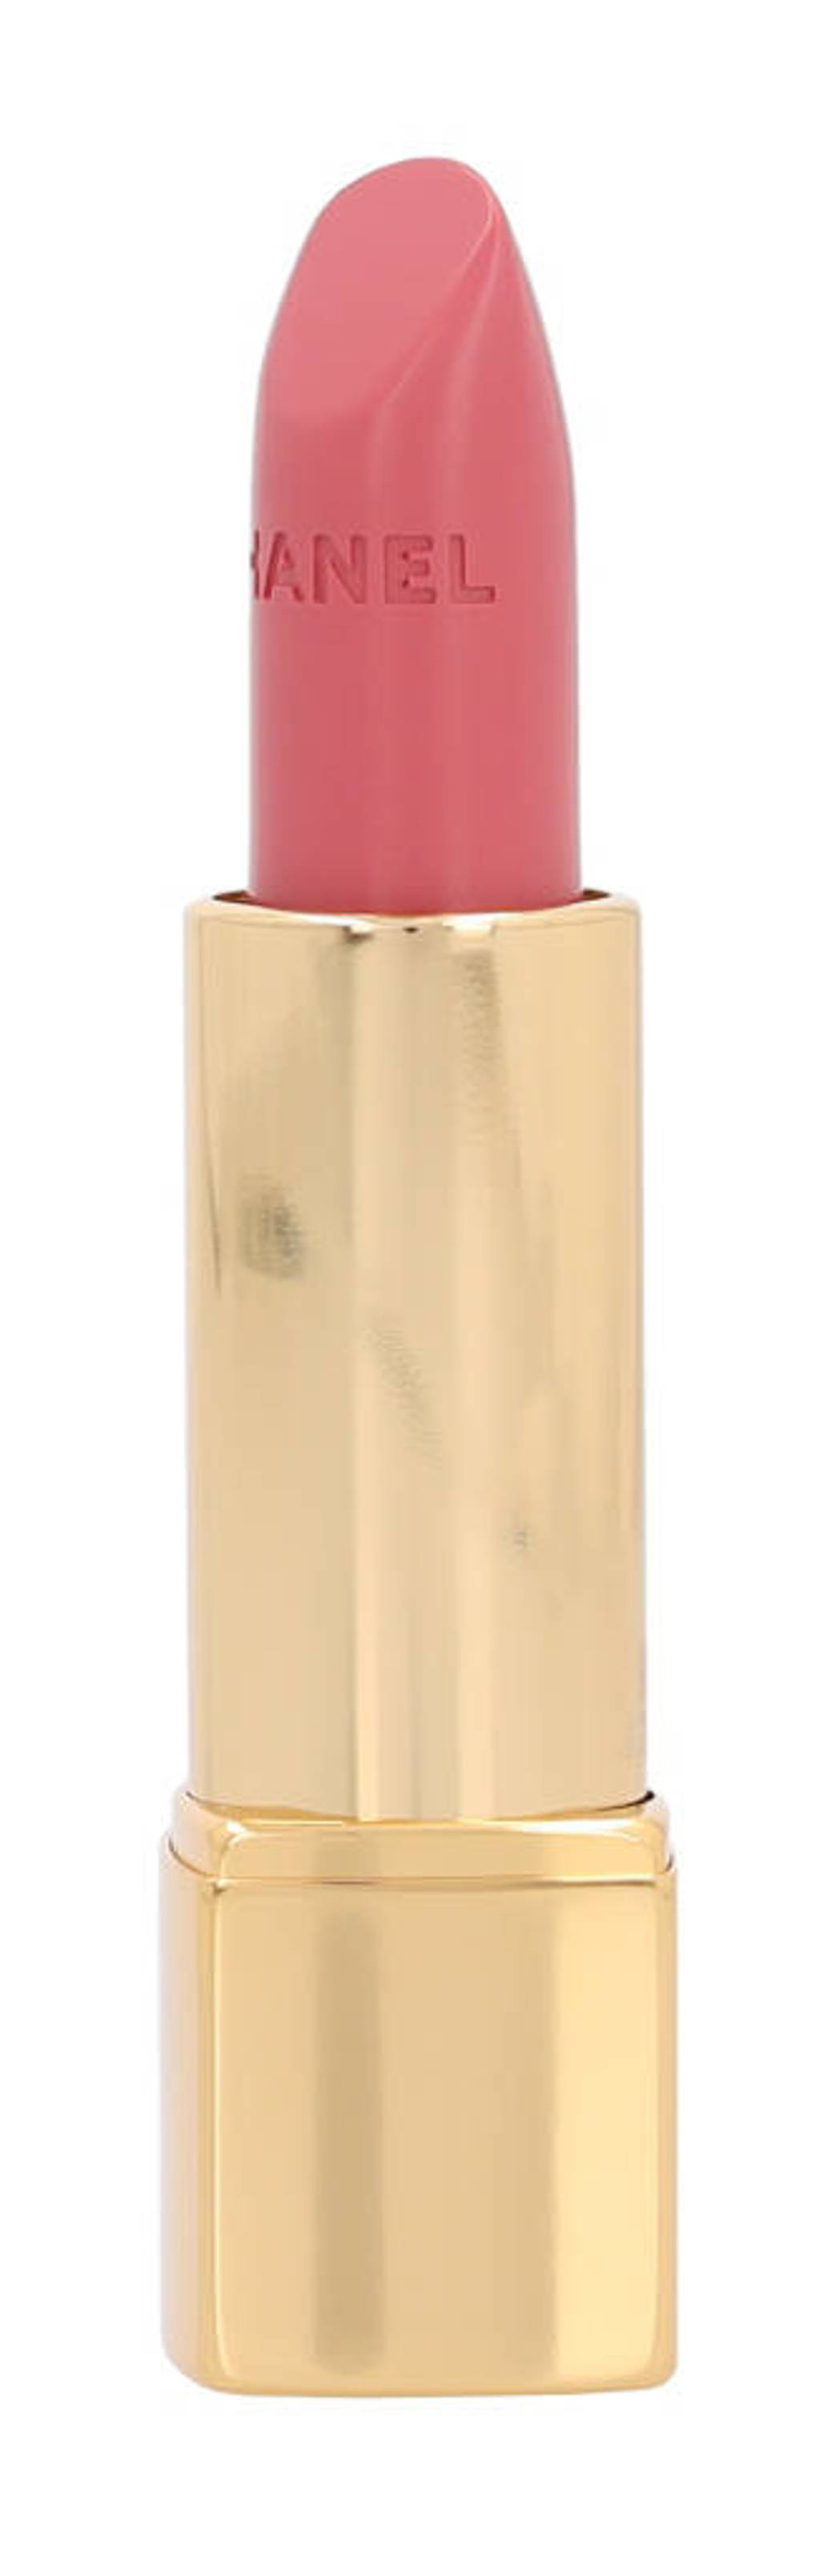 Chanel Rouge Allure Luminous Intense Lip Colour lippenstift - 91 Seduisante